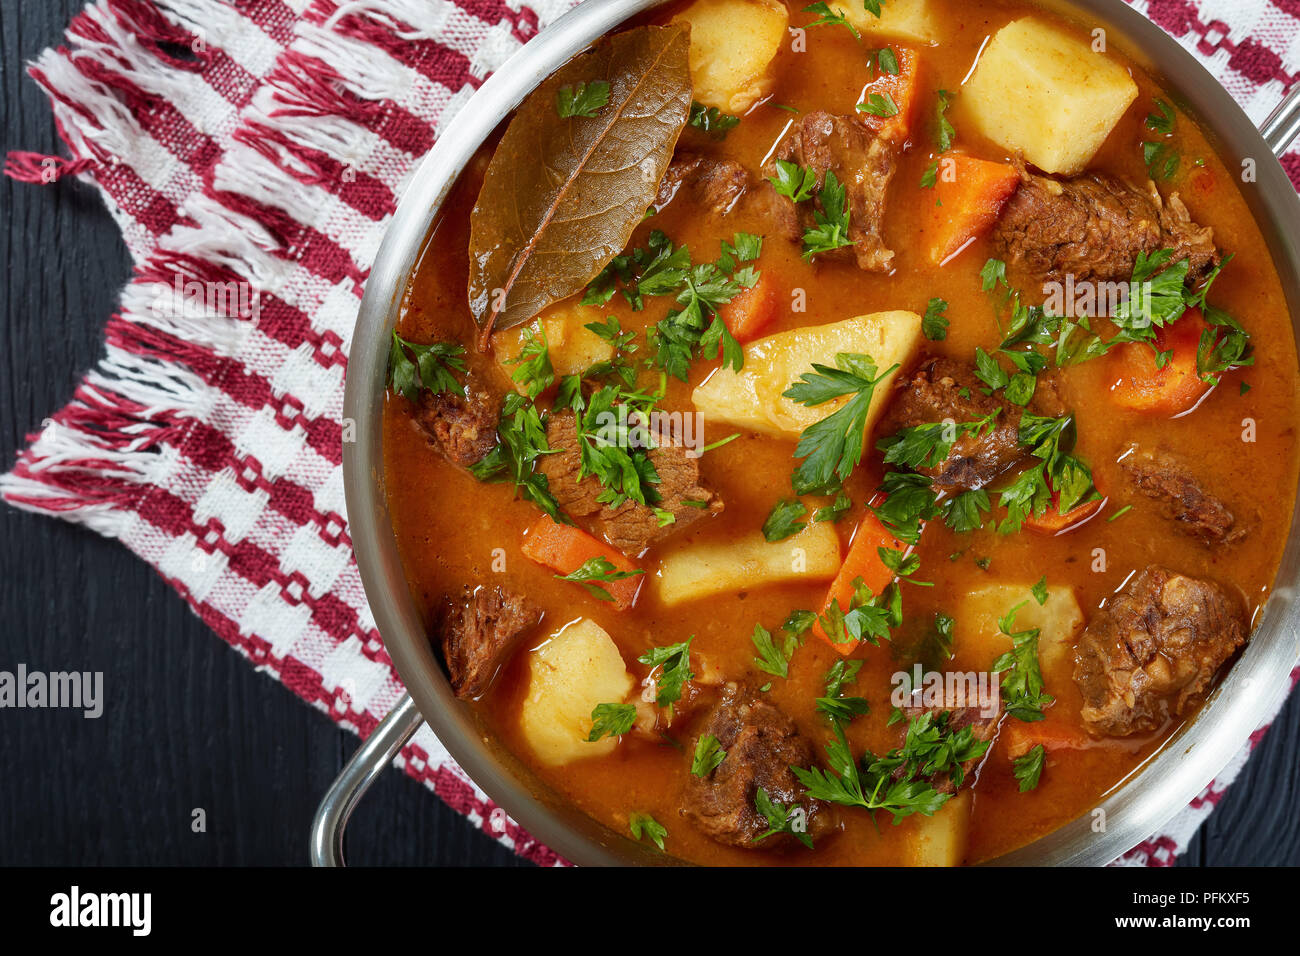 Rindfleisch Eintopf mit Kartoffeln und Karotten oder estofado de Carne in  eine Kasserolle, authentische Rezept, Ansicht von oben, close-up  Stockfotografie - Alamy